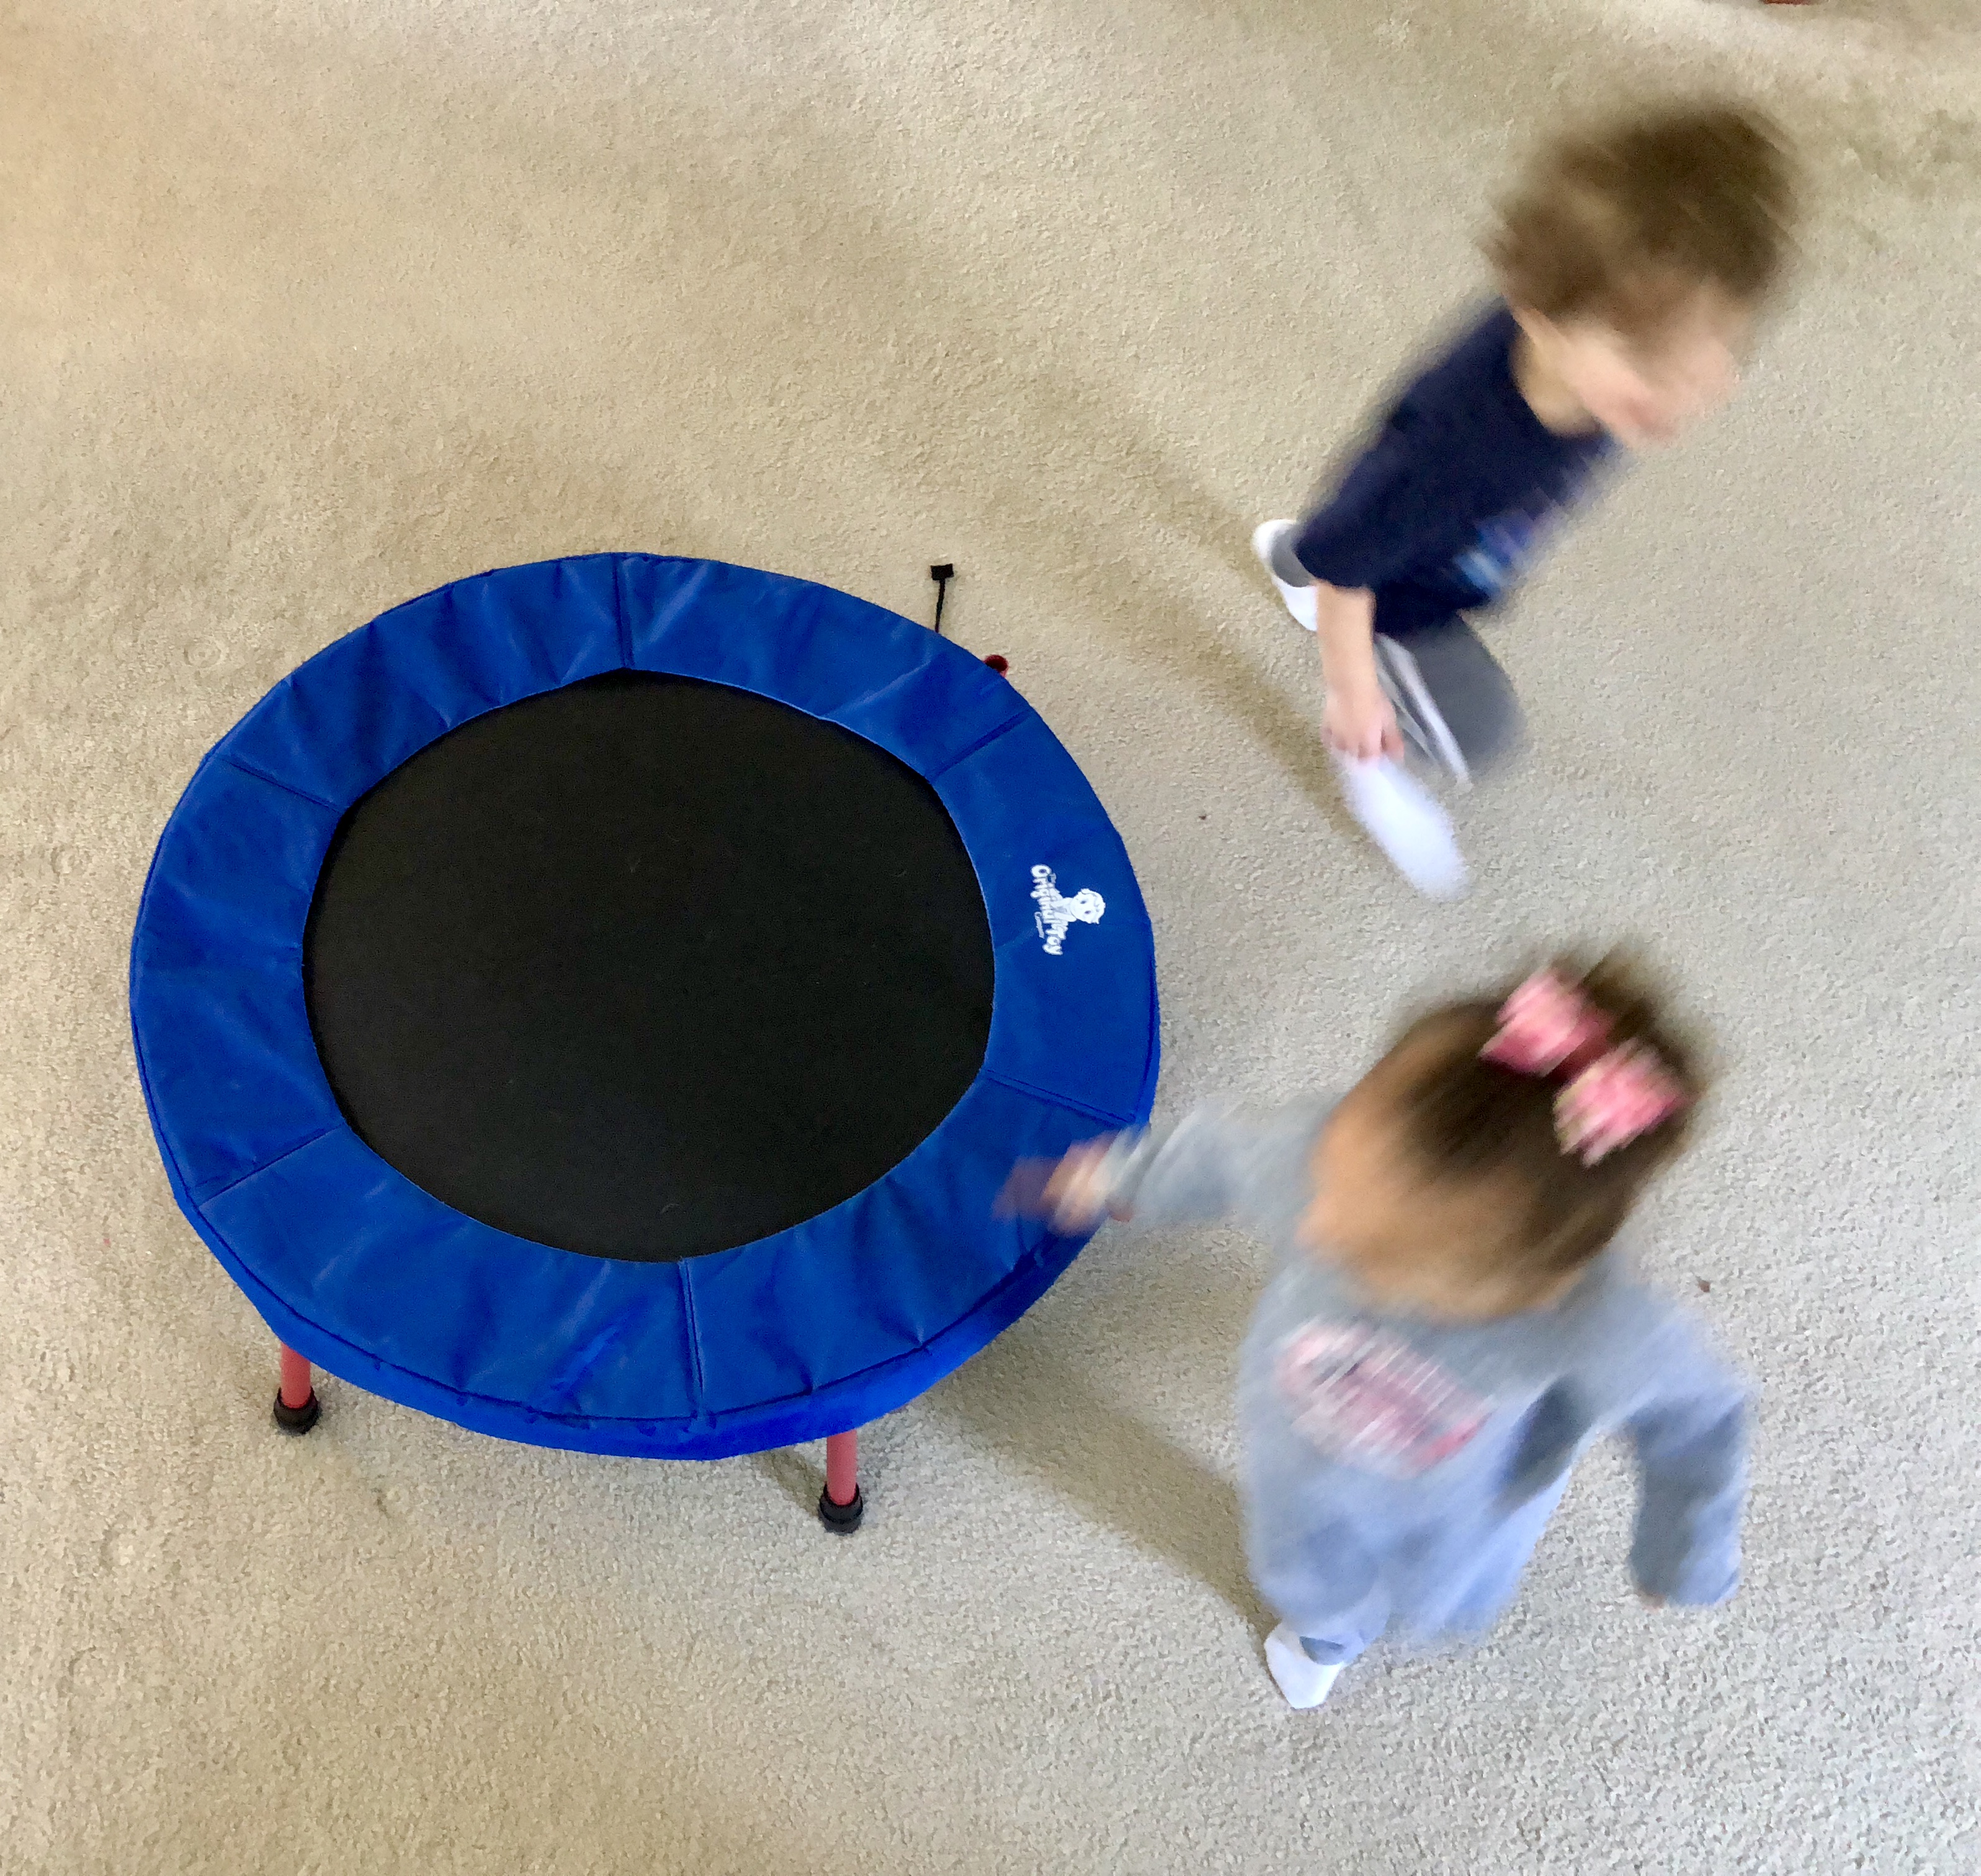 blurry image of 2 children running around a trampoline